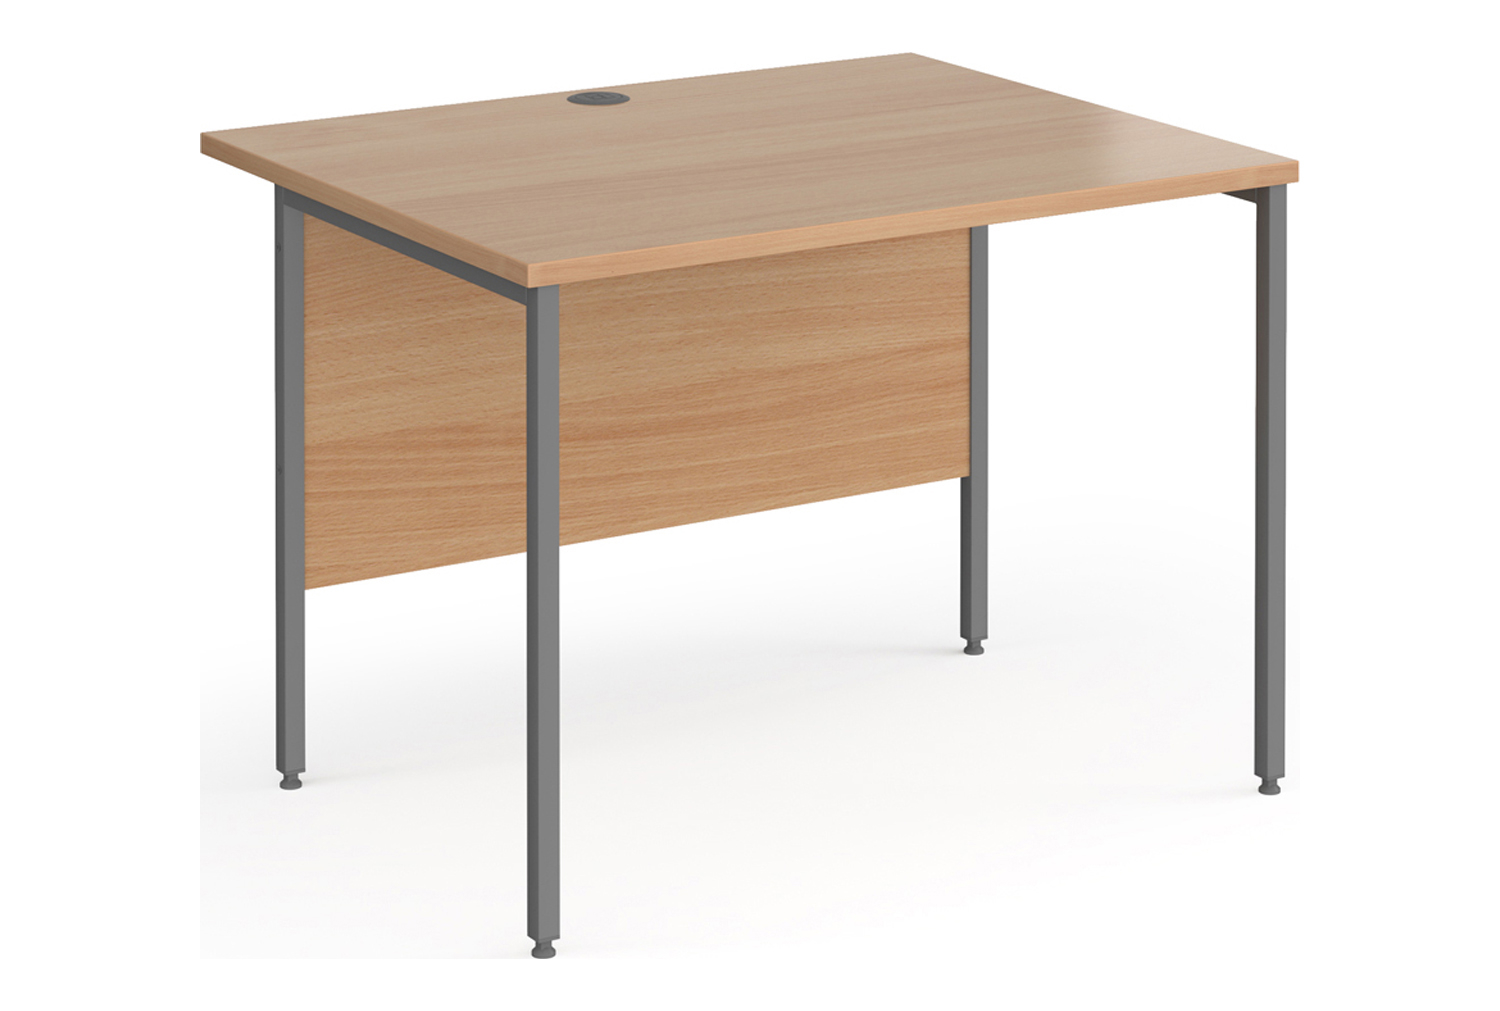 Value Line Classic+ Rectangular H-Leg Office Desk (Graphite Leg), 100wx80dx73h (cm), Beech, Fully Installed